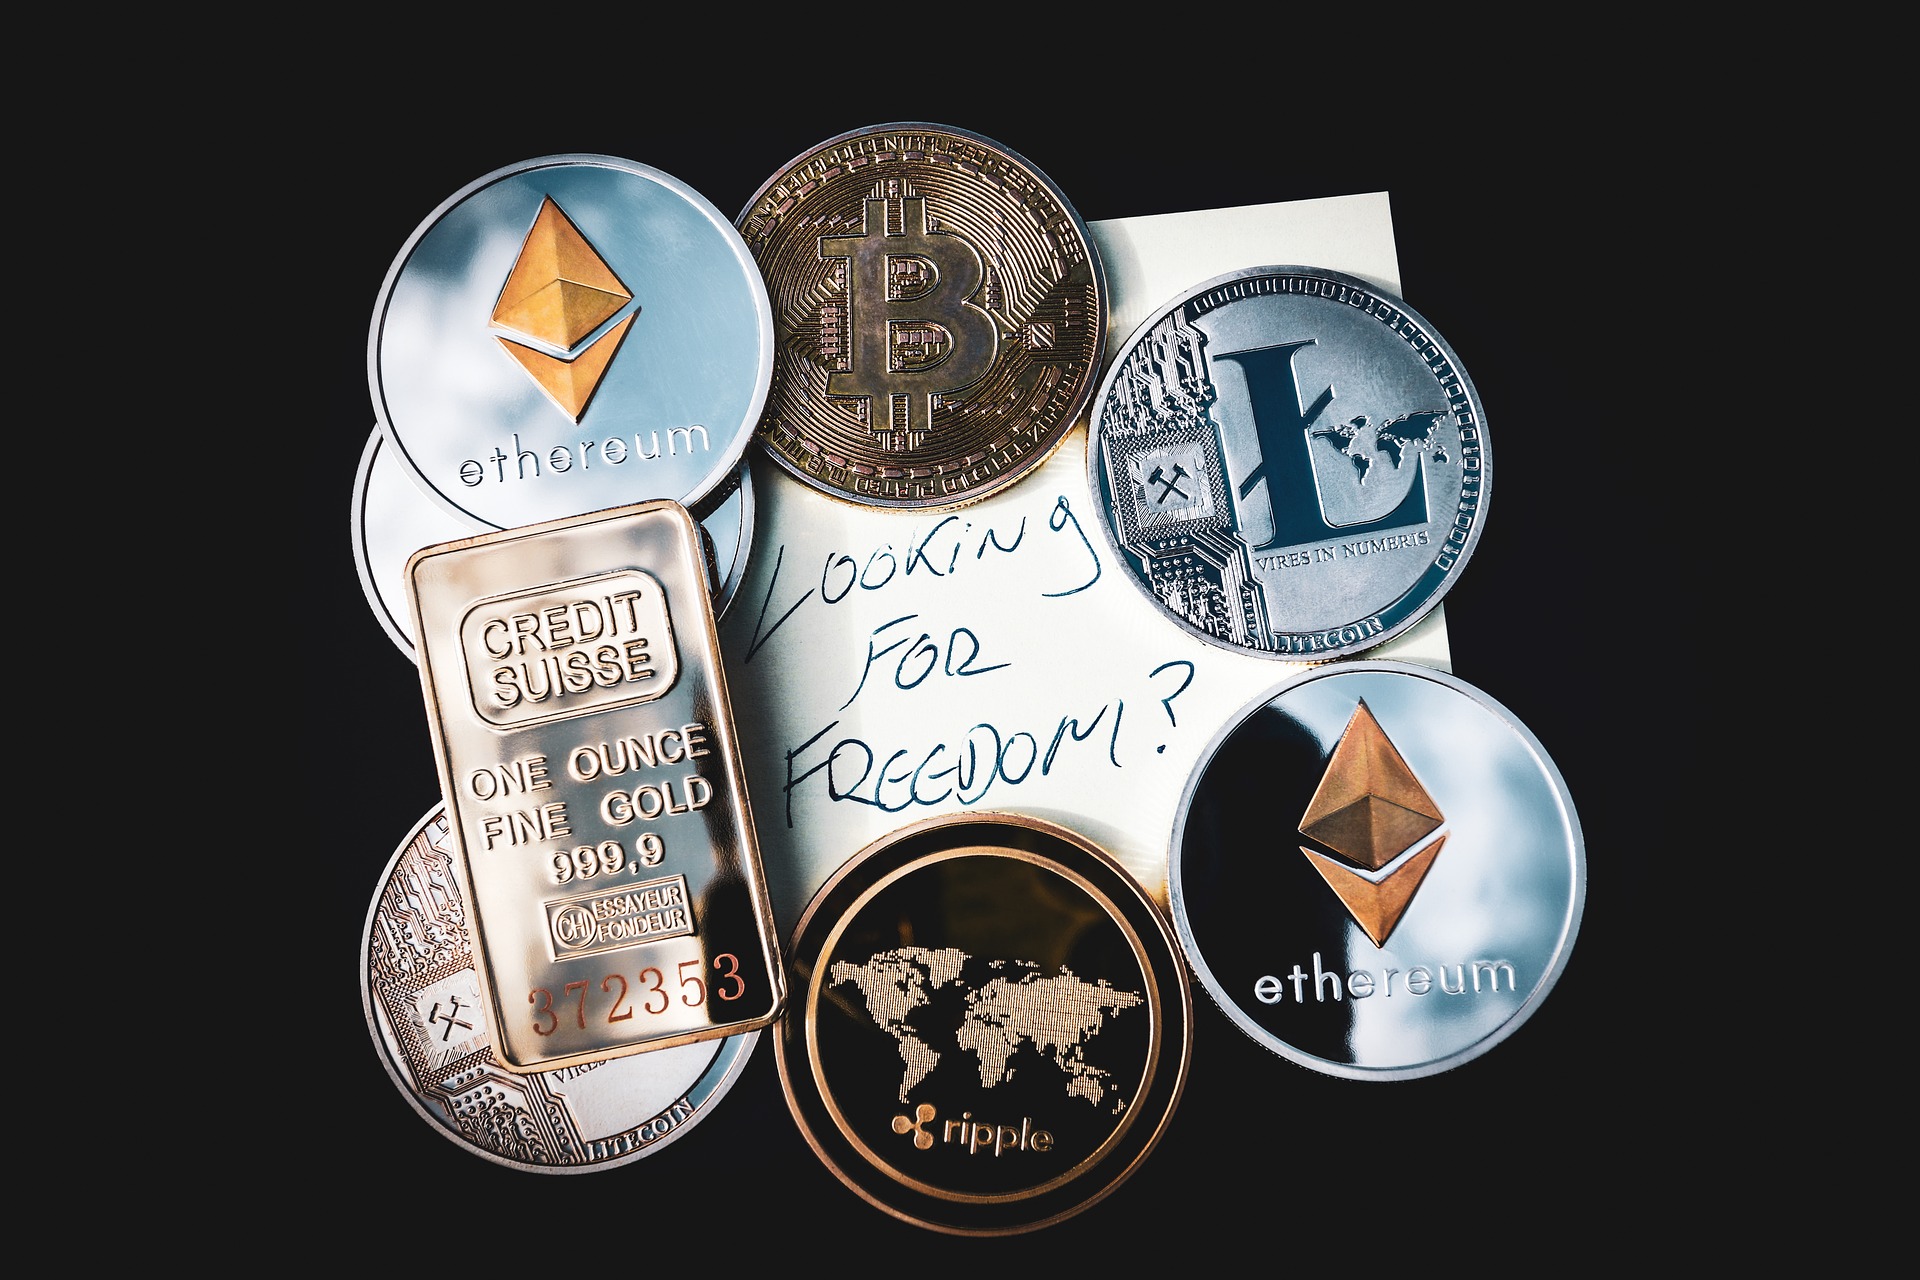 sokan napi kereskedelmet folytatnak bitcoinnal hogyan lehet nagy összegeket befektetni bitcoinba